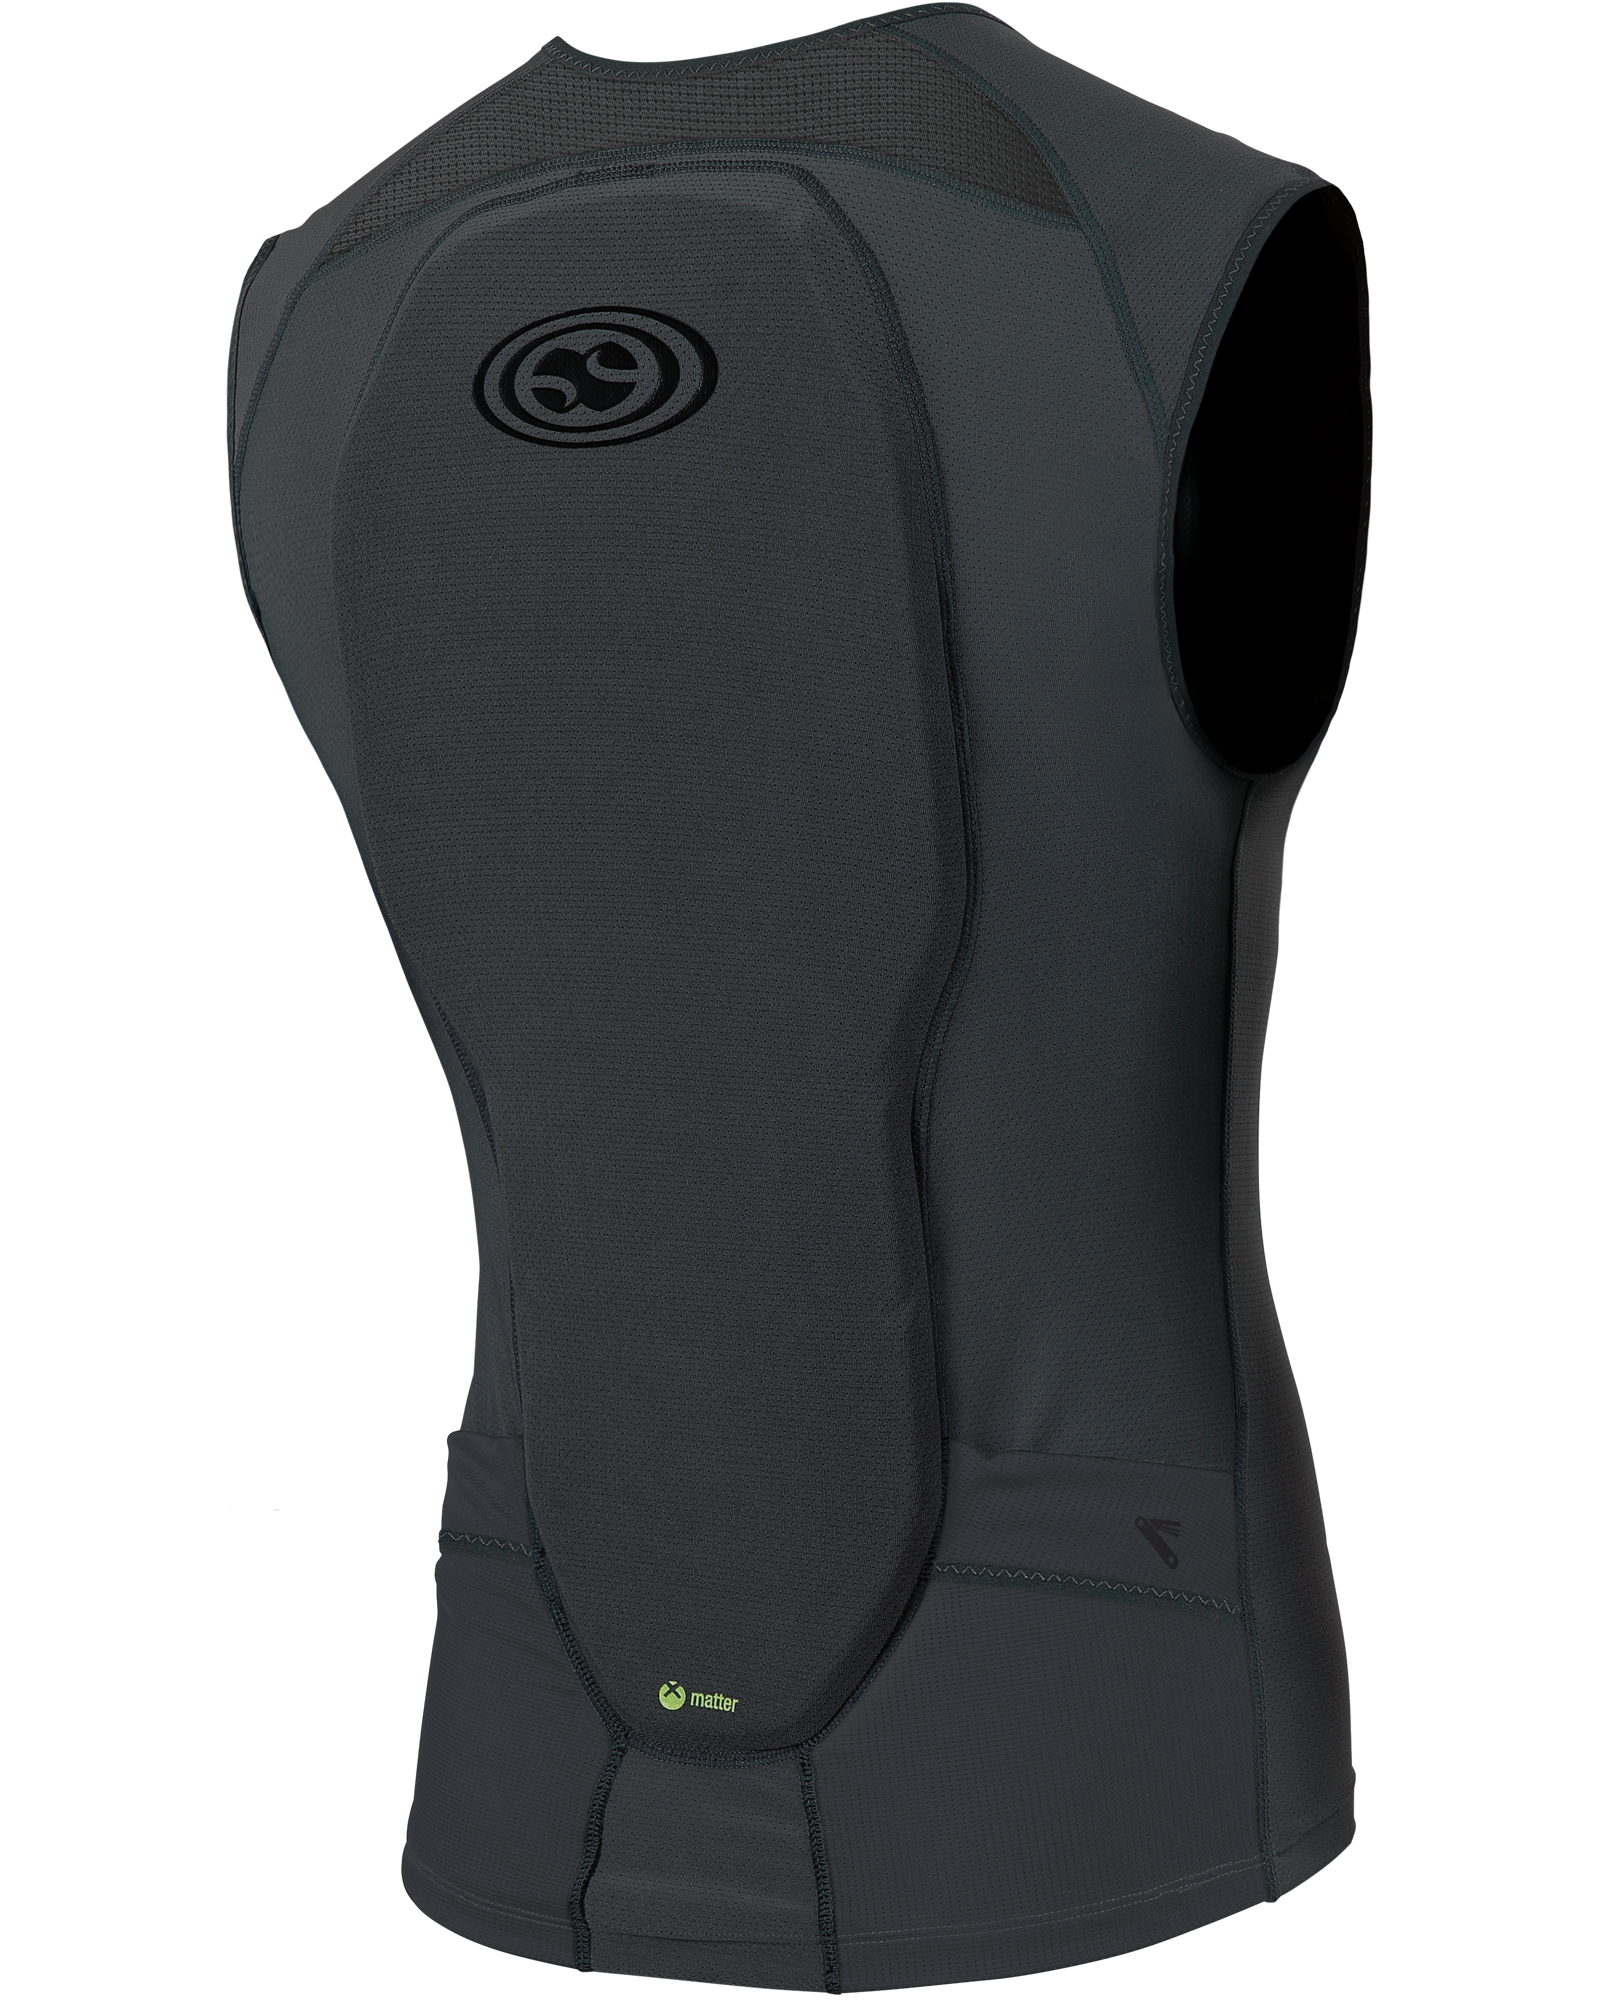 Varen het winkelcentrum bekennen iXS Flow Upper Body Protection Vest | CANYON BM